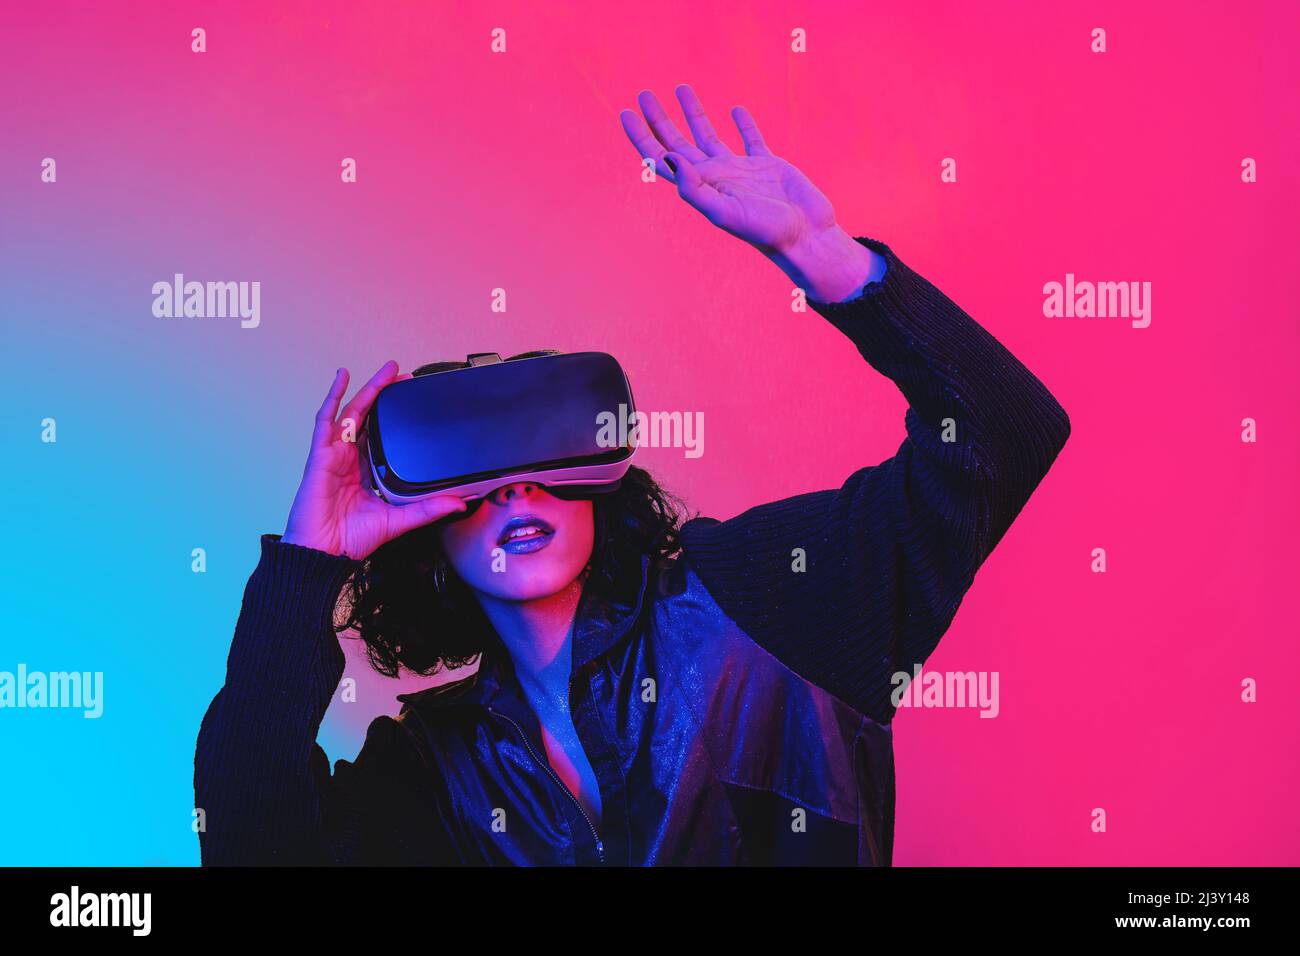 La jeune femme utilise le visualiseur de réalité virtuelle. Portrait de femme moderne avec un look tendance et des couleurs vives. Banque D'Images